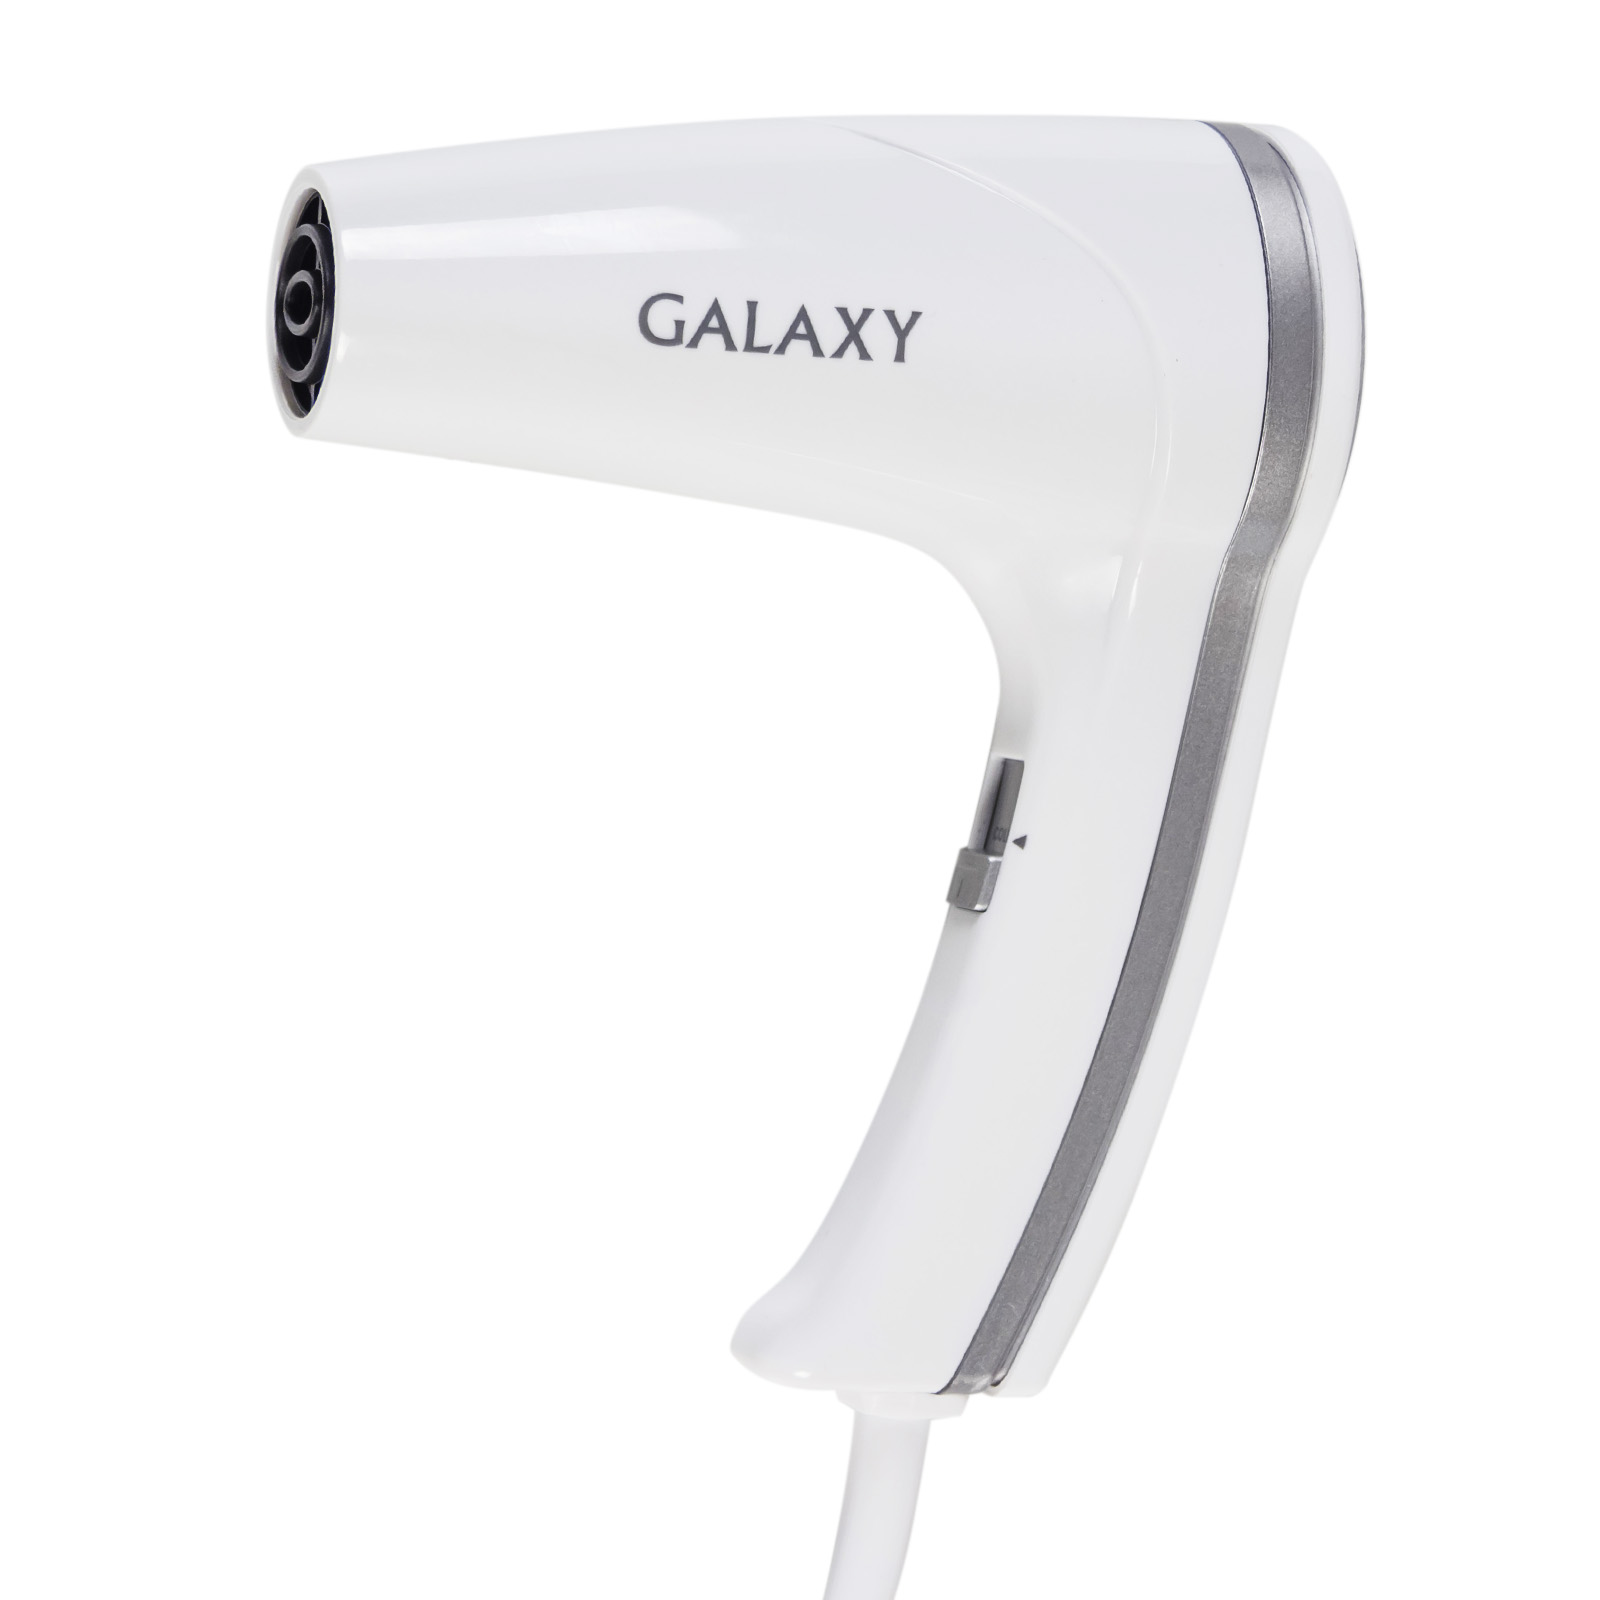 Фен Galaxy GL 4350 с настенным креплением (1400 Вт, 2 скорости, 3 темп, хол воздух,  (10шт/уп)